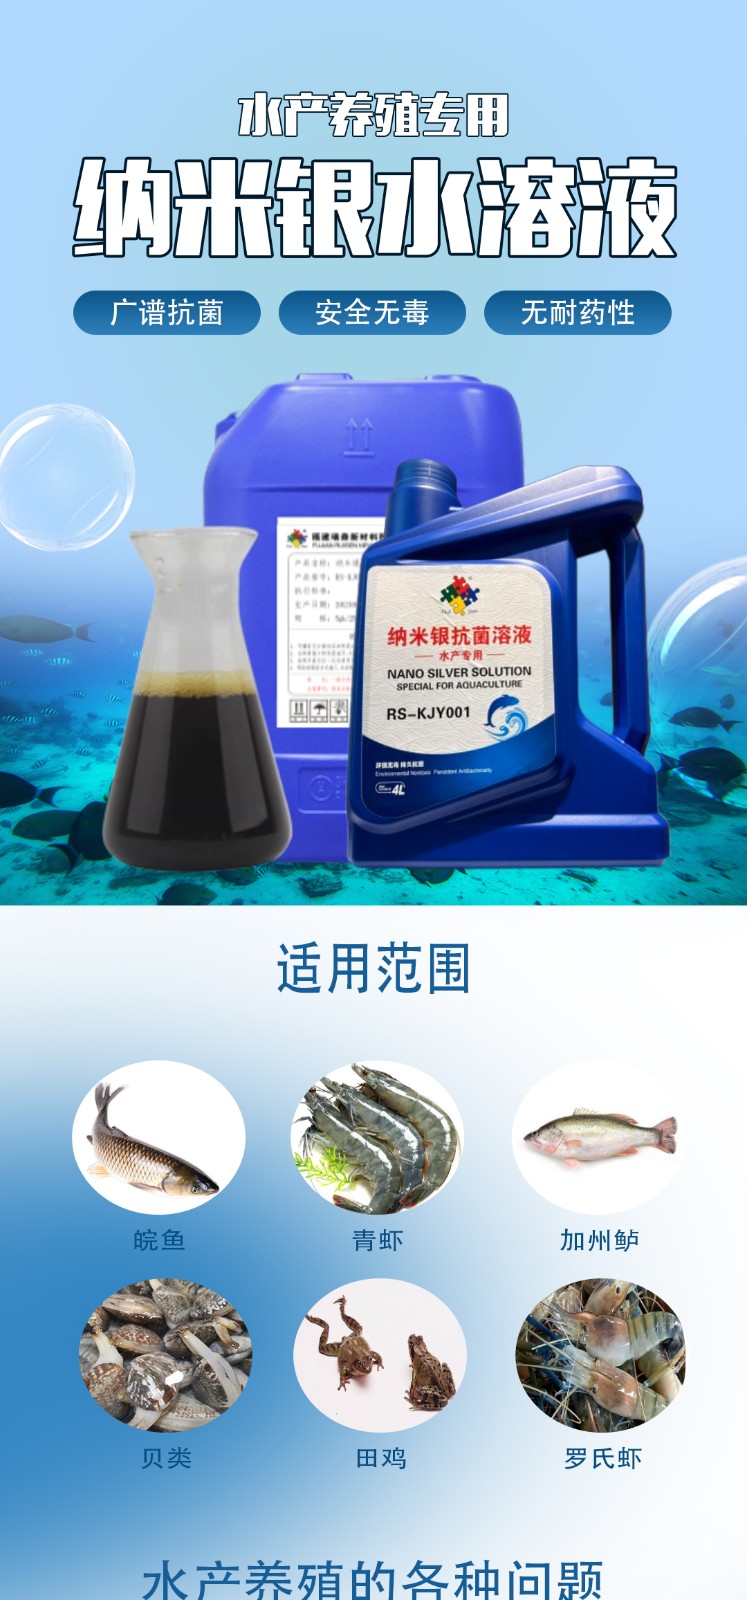 瑞森纳米银水溶液市场需求和应用